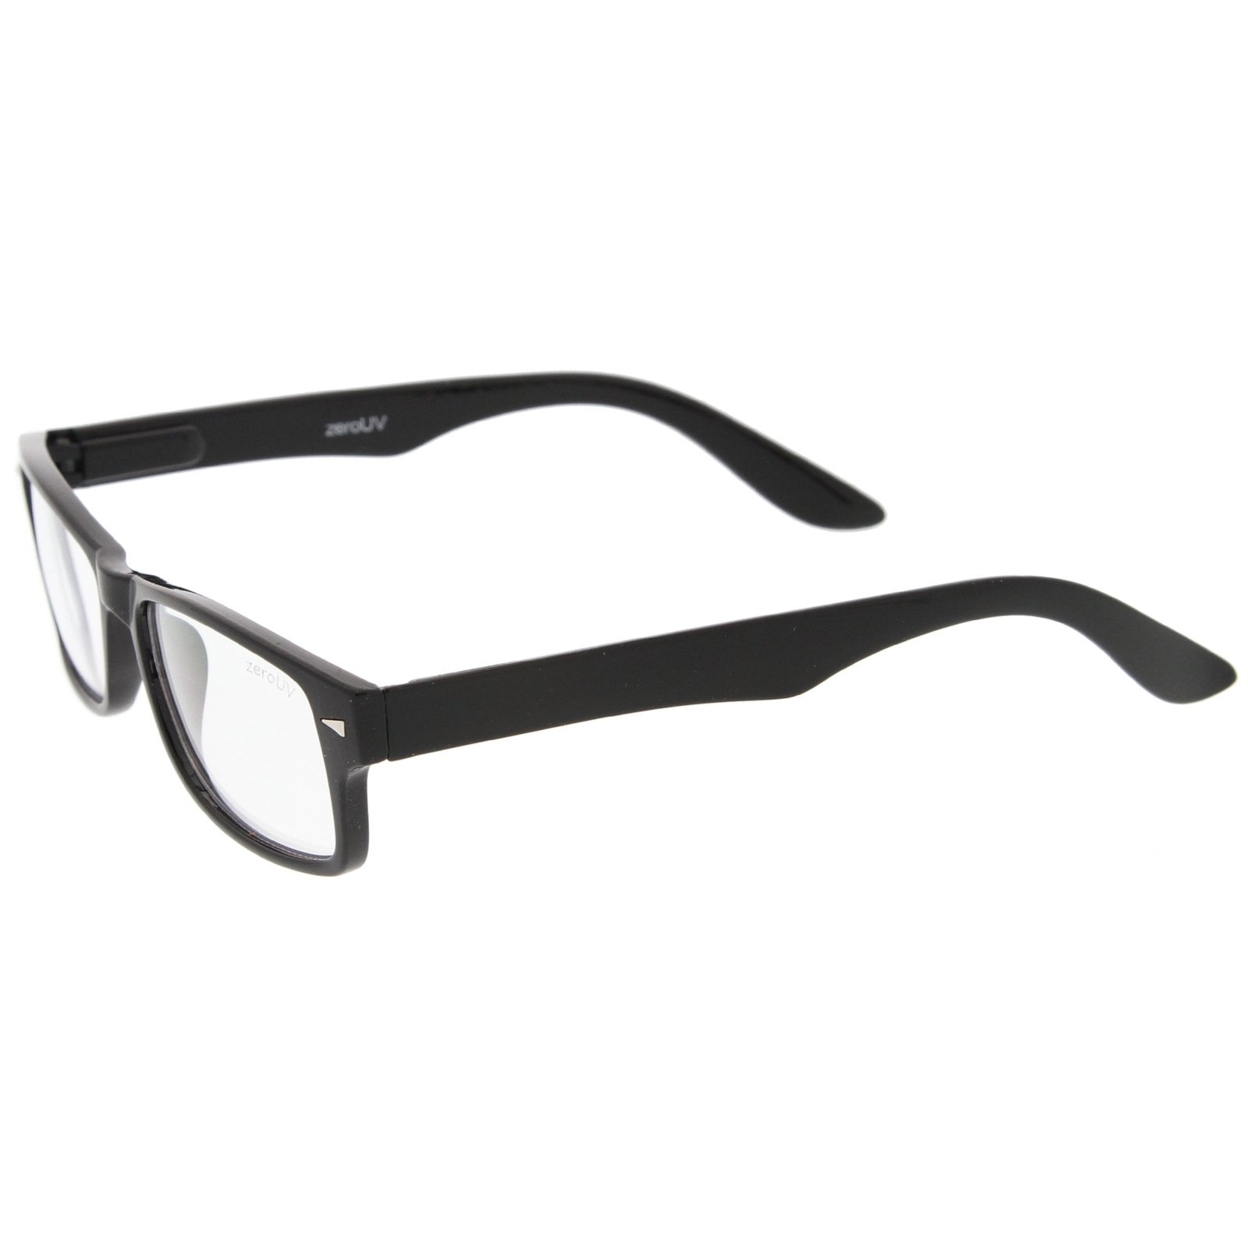 Casual Horn Rimmed Clear Lens Rectangular Glasses 51mm - 2-Pack , Black/Tortoise